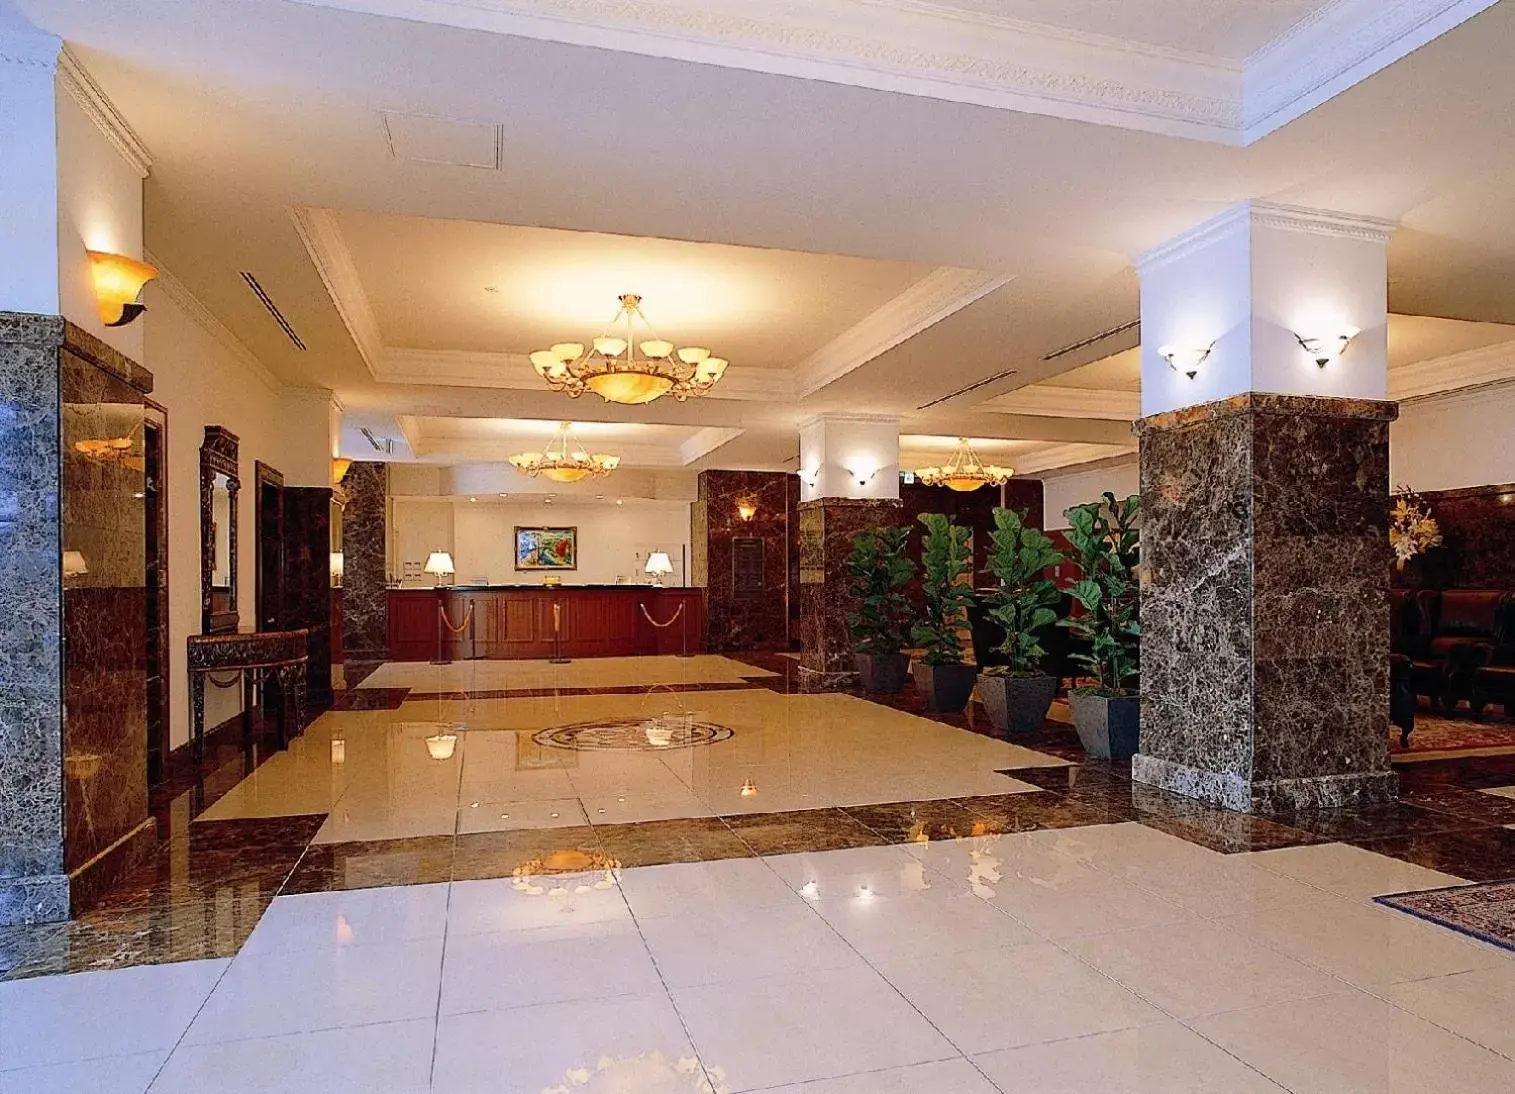 Lobby or reception in Hotel Neu Schloss Otaru